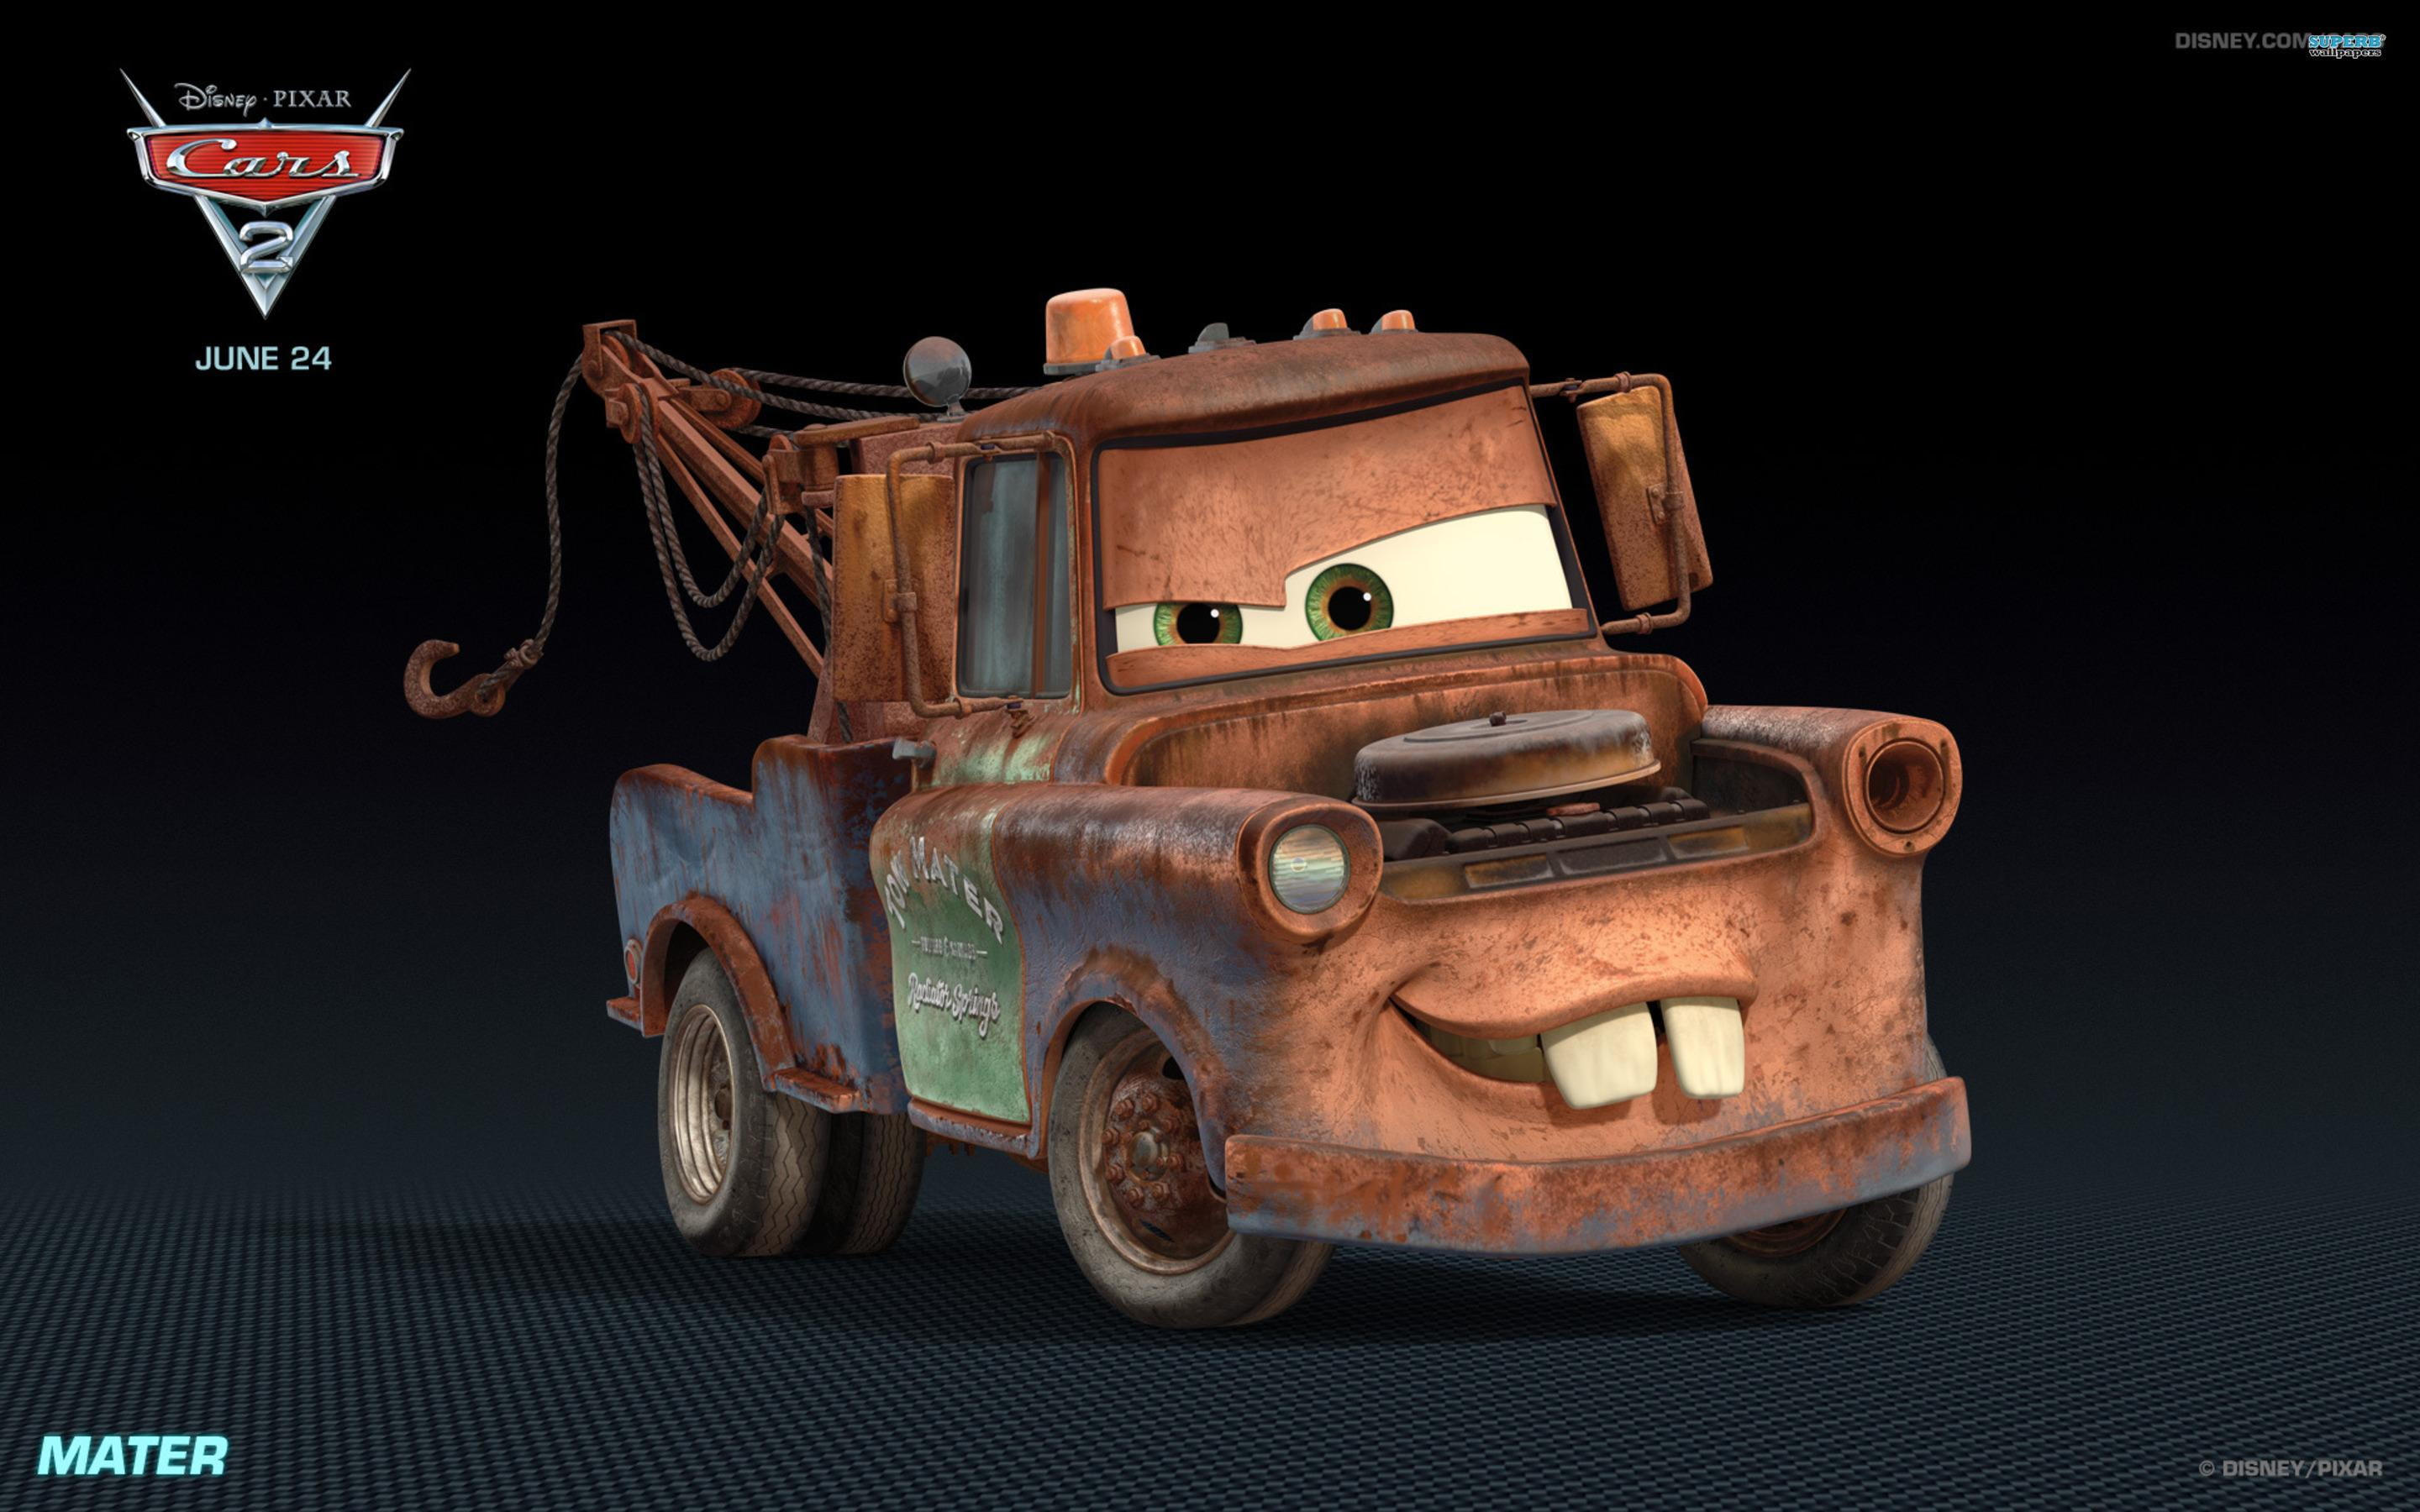 Mater - Cars 2, movies, cartoons